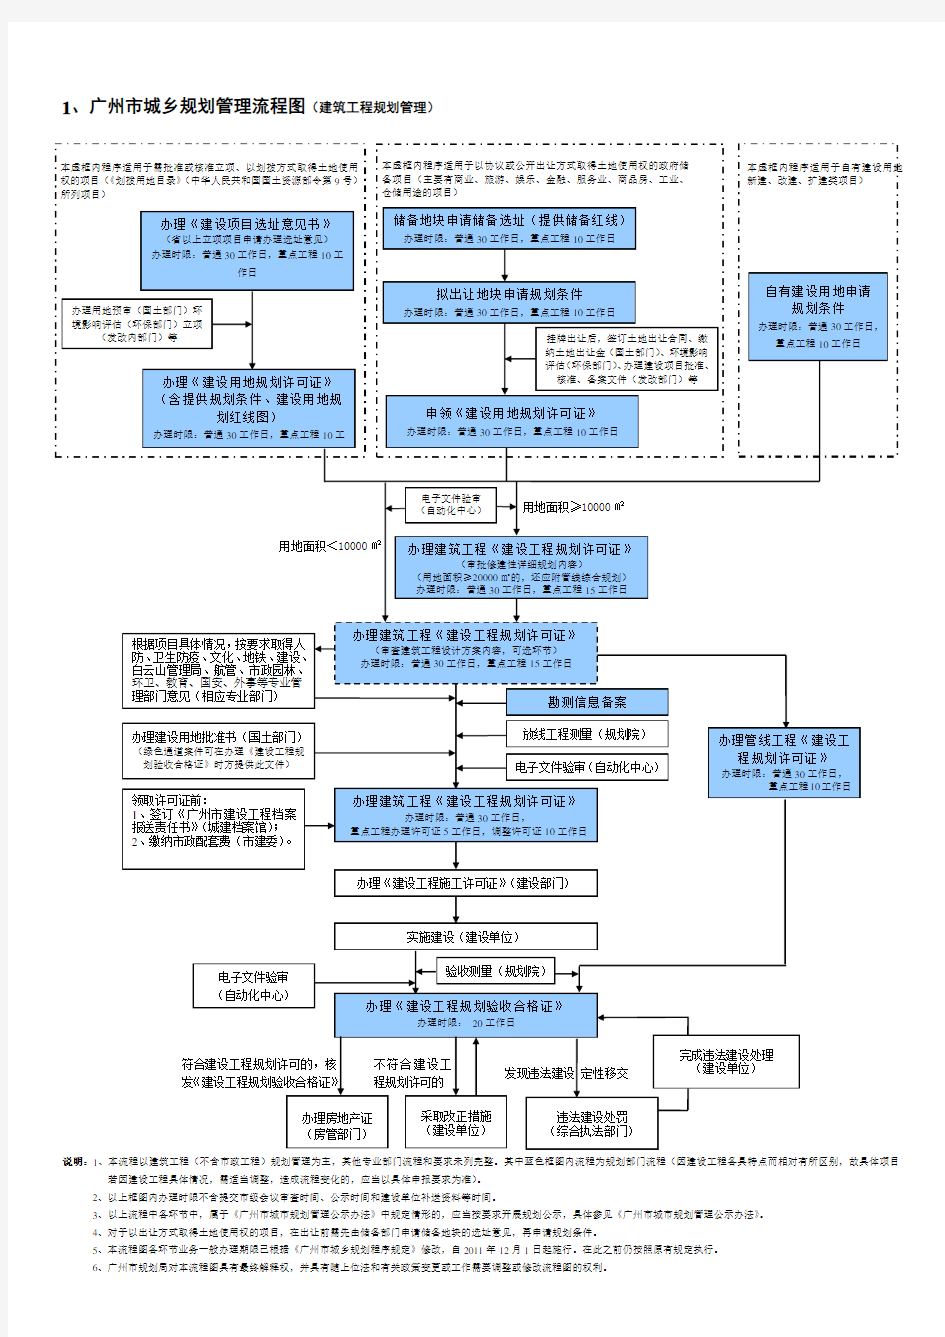 广州市城乡规划管理流程图